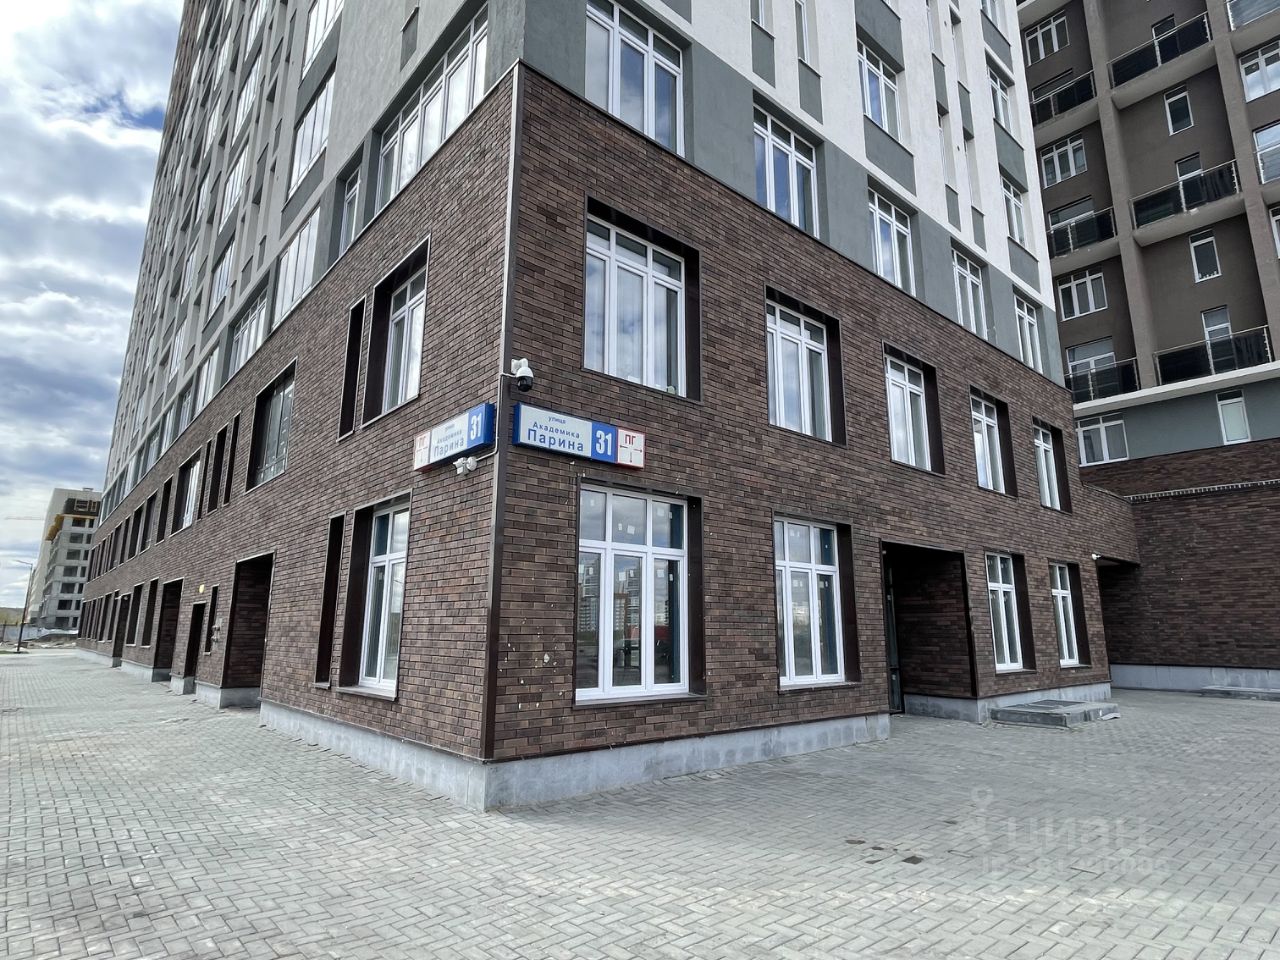 Помещение свободного назначения, 202 кв.м, 1 этаж, Екатеринбург. Современное здание, большие окна, удобное расположение.